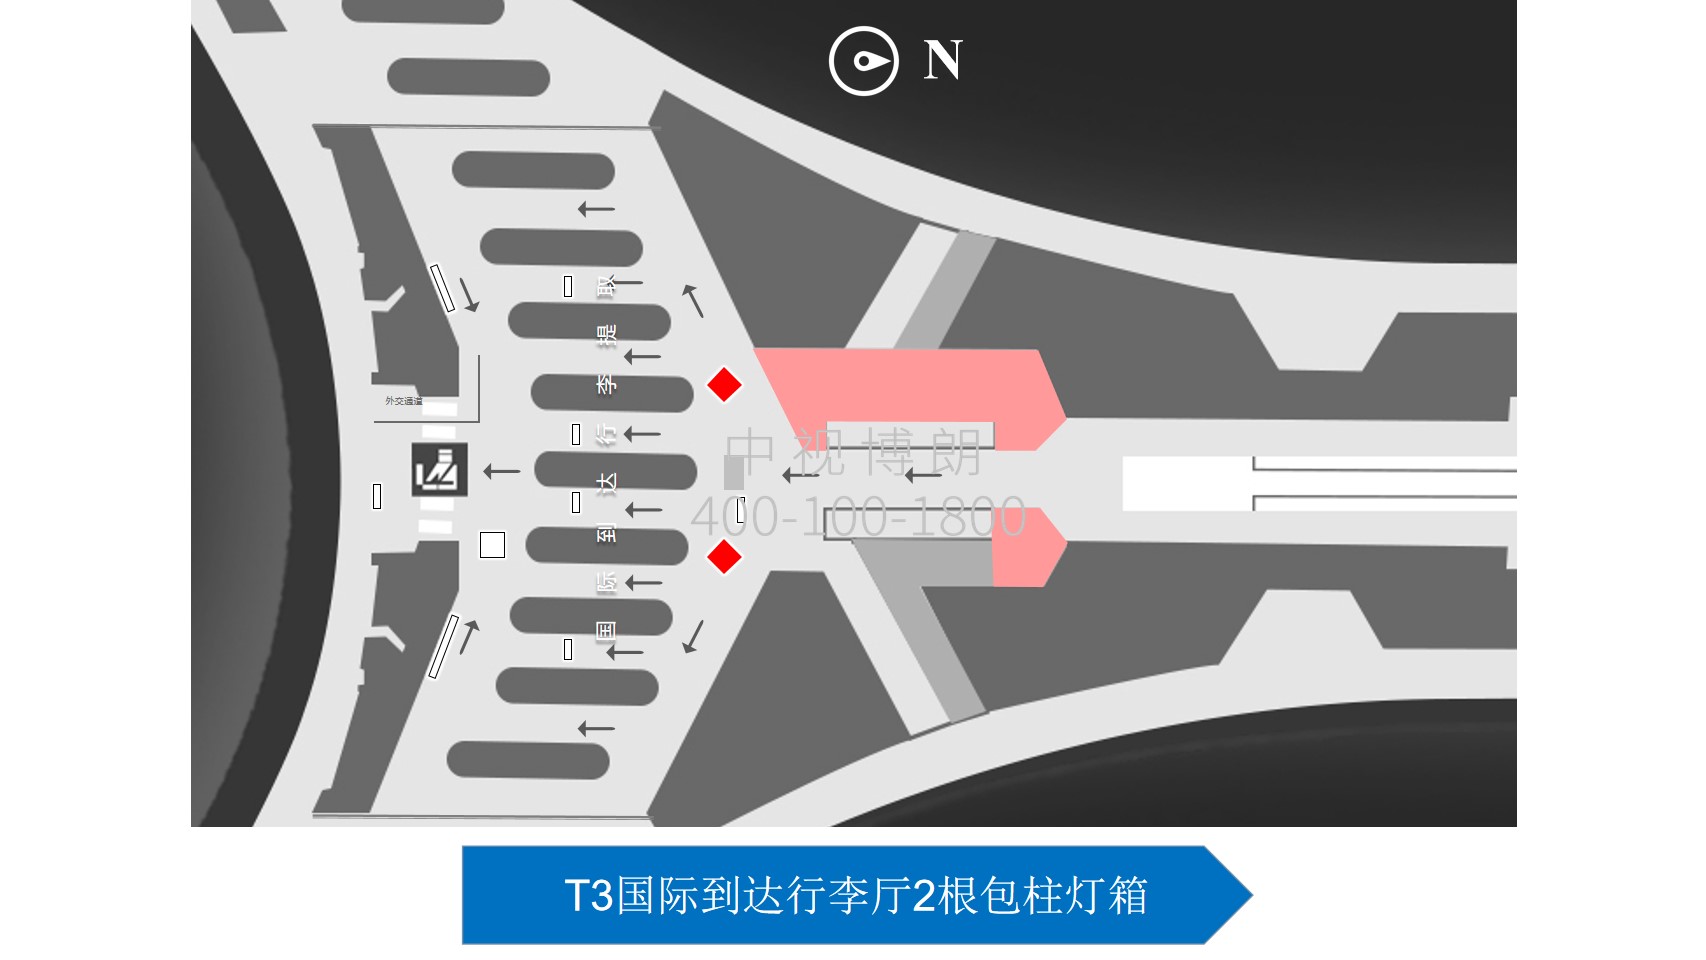 北京首都机场广告-T3 International Arrival Luggage Hall Package Column Light Box位置图